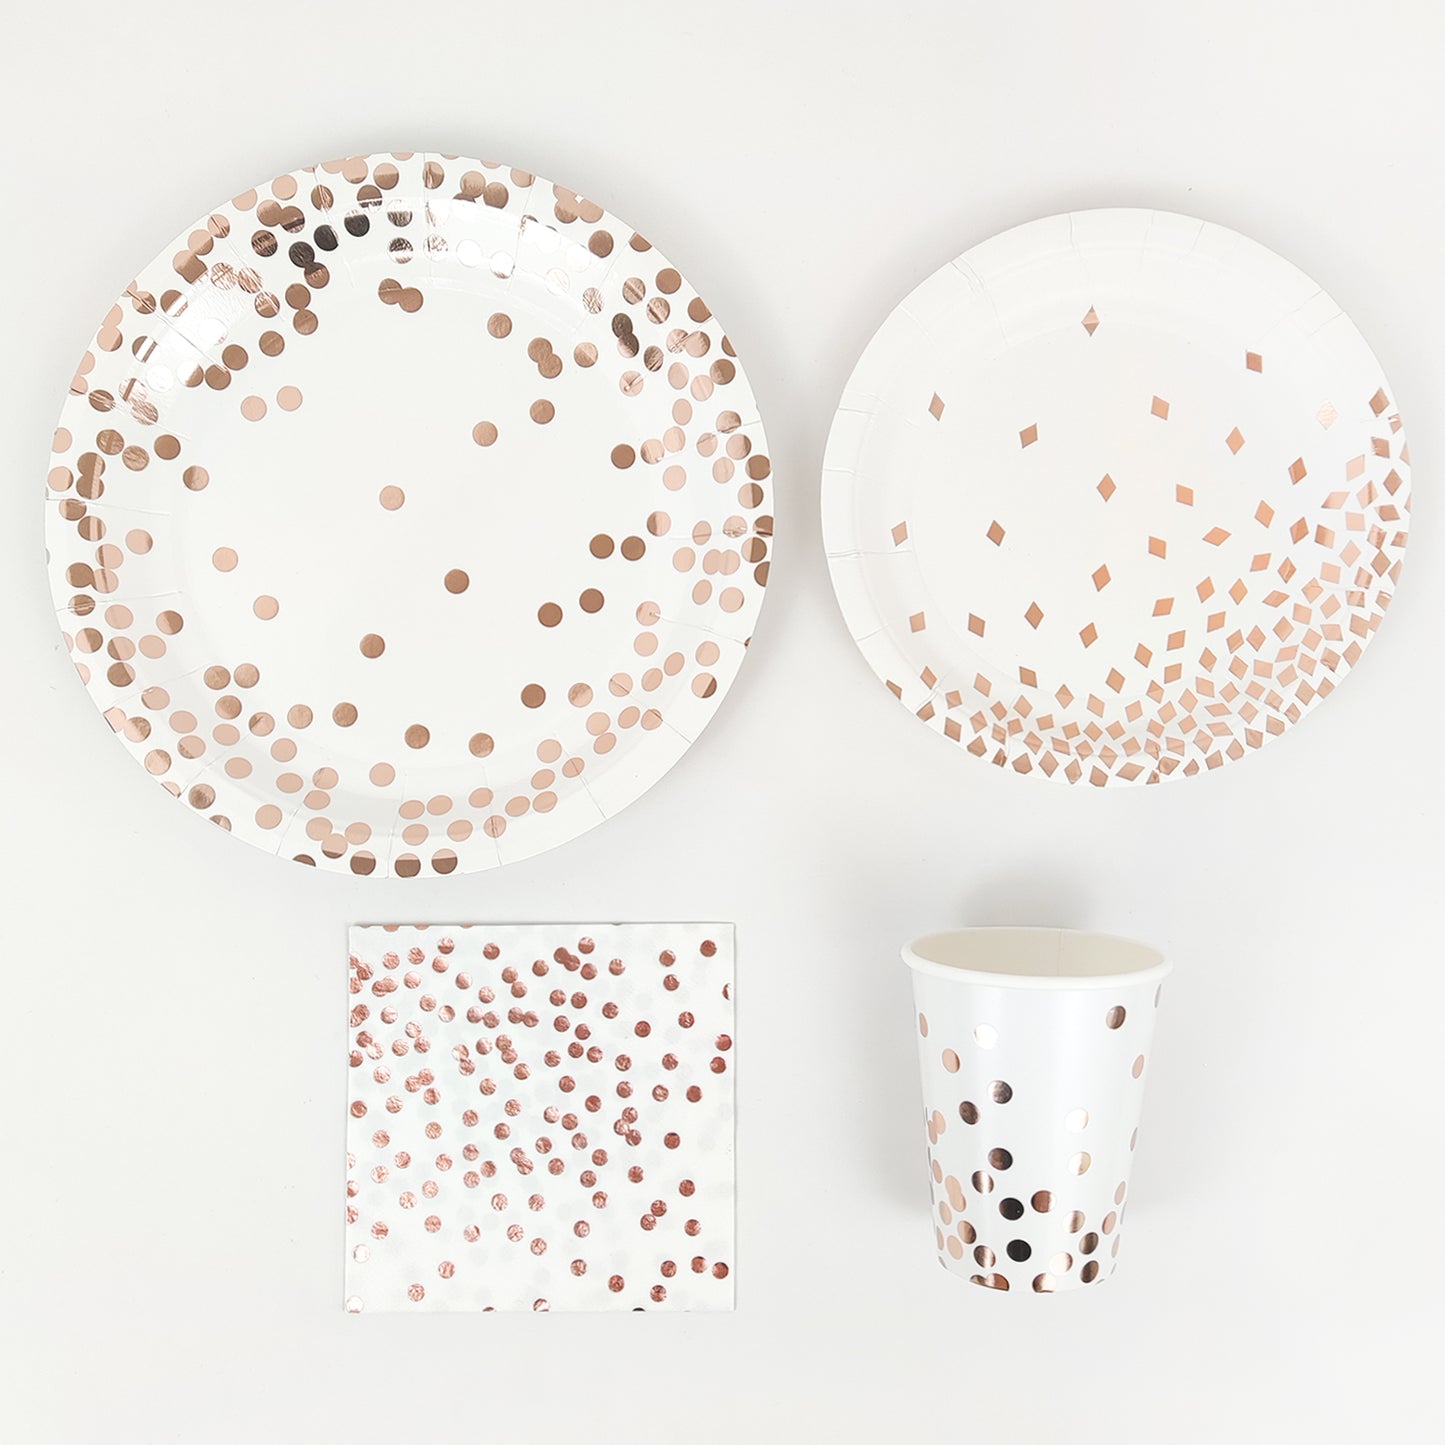 8 pcs Round Golden Dots Diamonds Paper Plates Cups Napkins Party Tableware Set Disposable Table Decoration